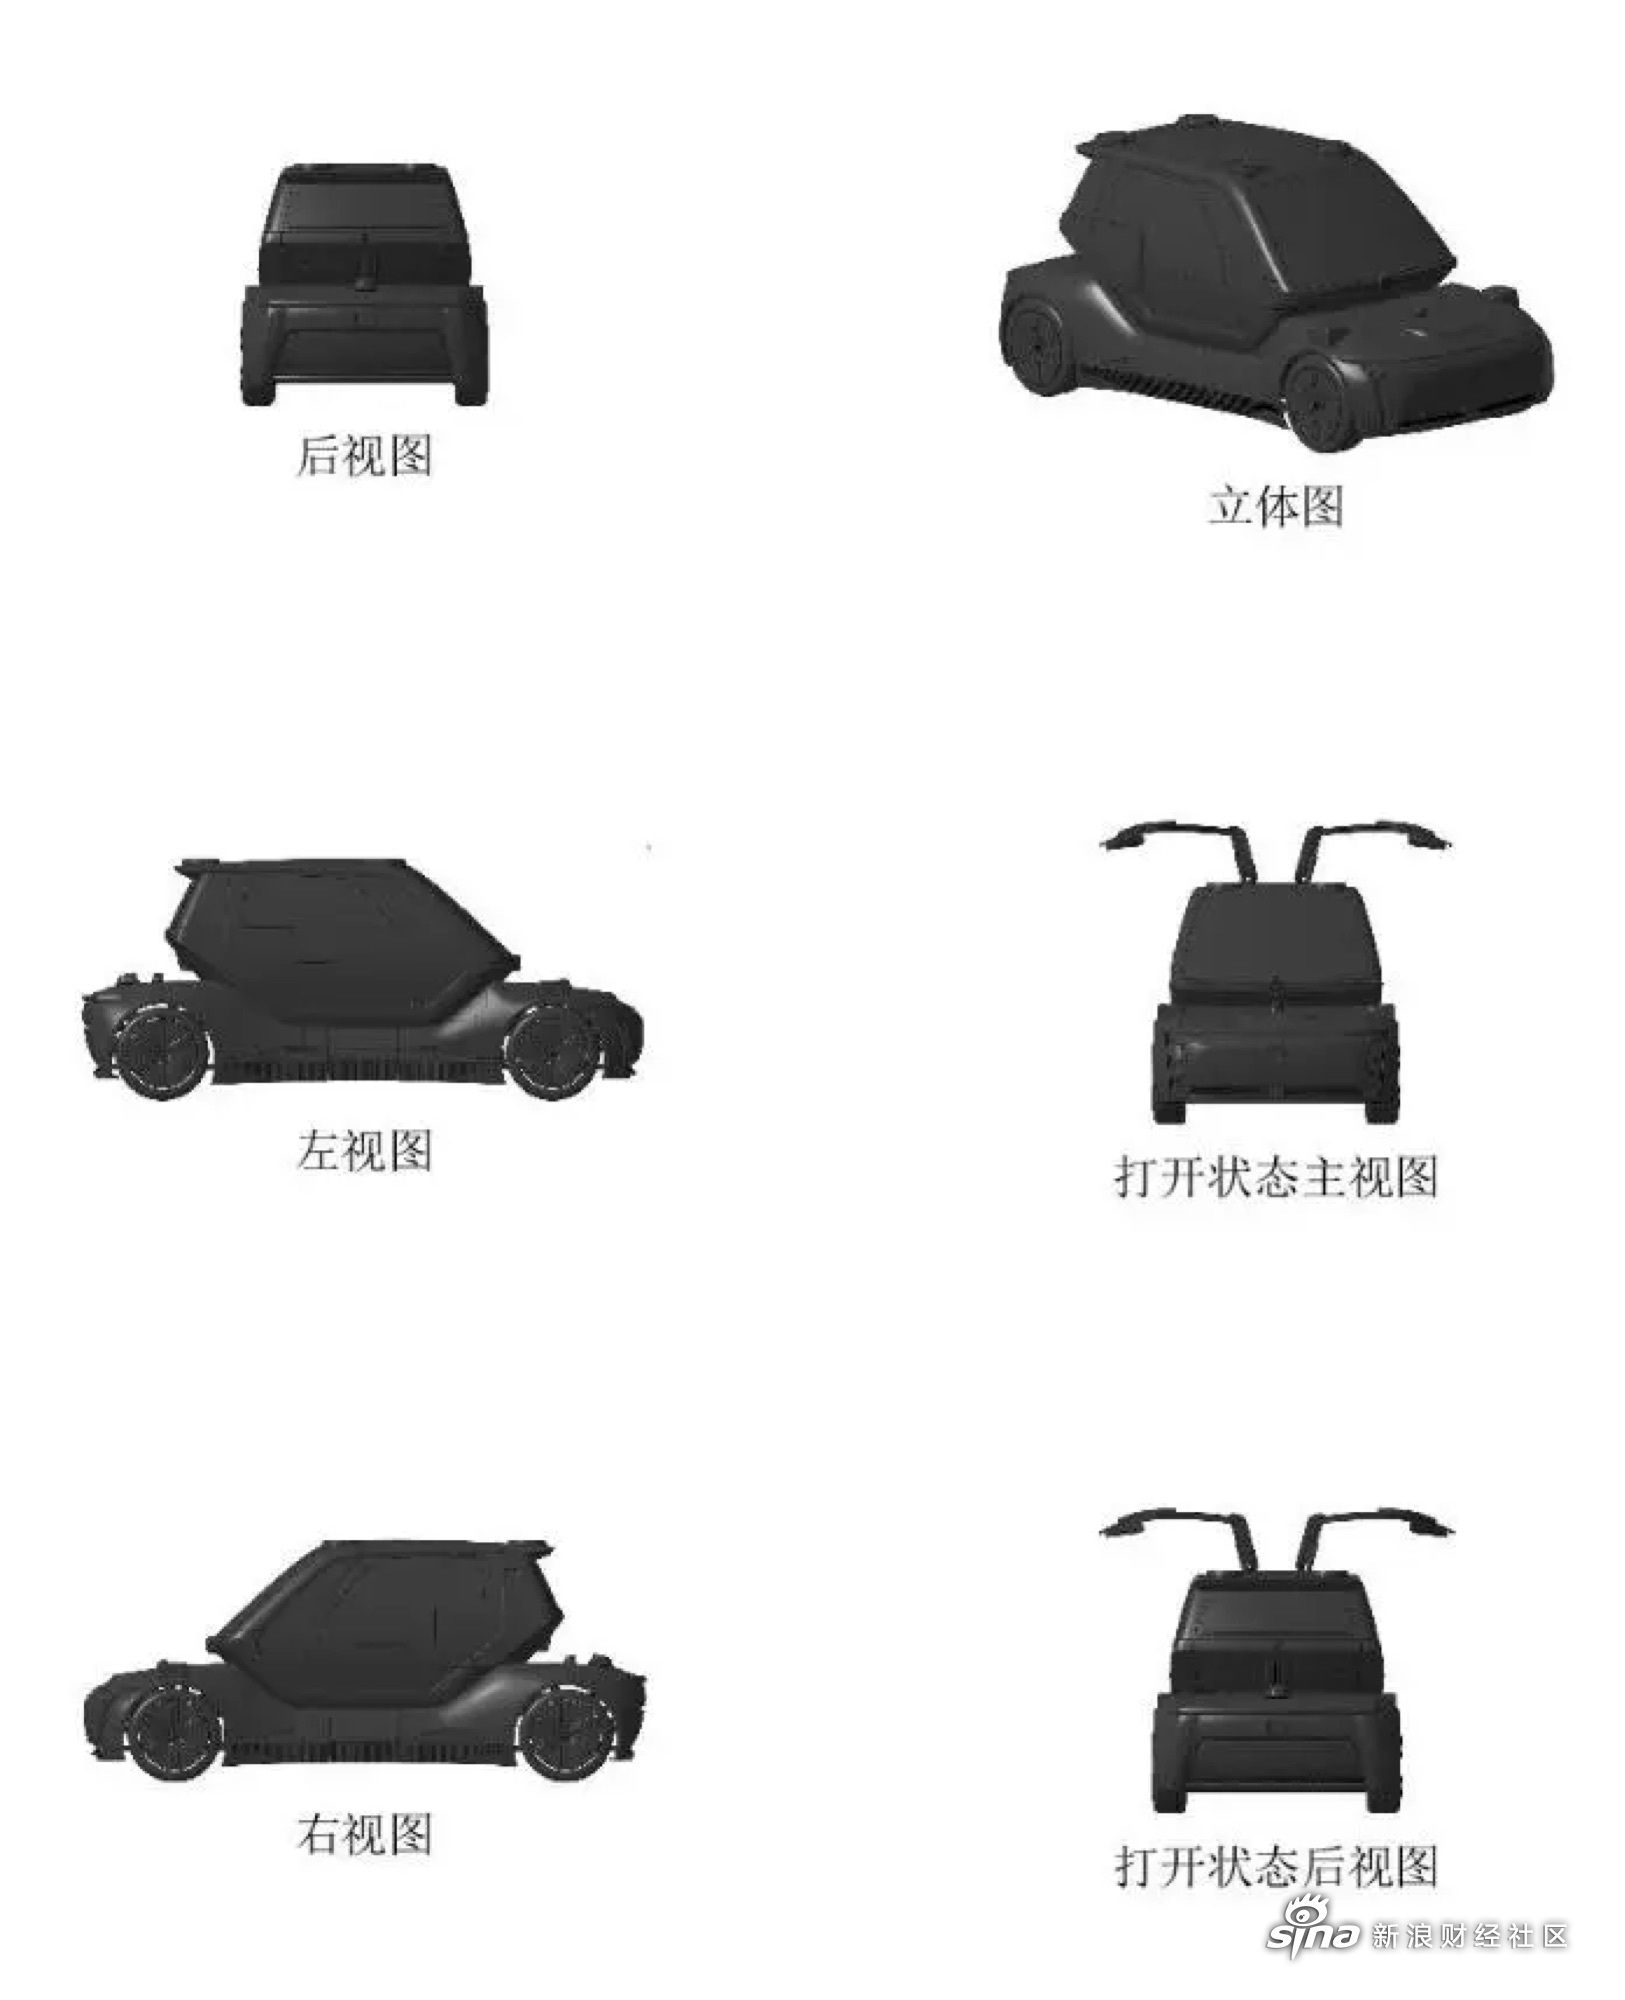 东风汽车集团有限公司申请的一种车辆便携旋翼式单人飞行器及车辆也